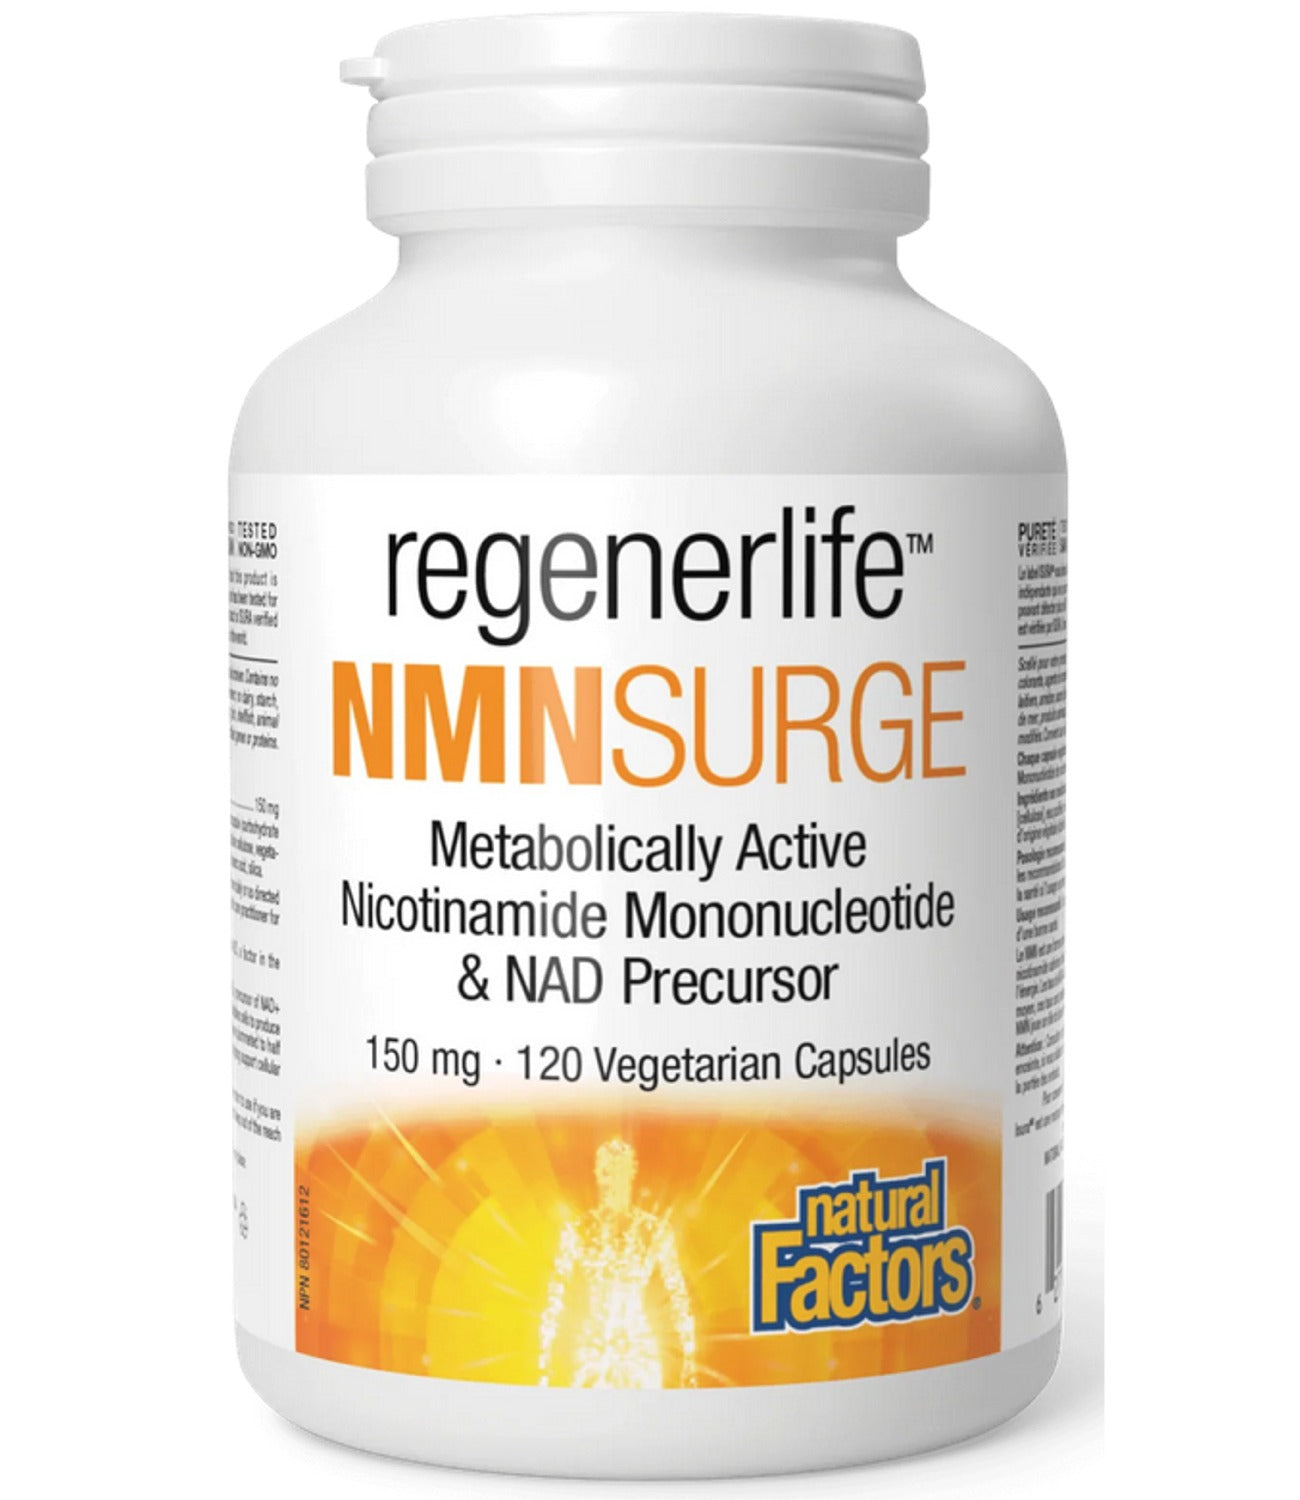 NATURAL FACTORS regenerlife NMNSurge (150 mg